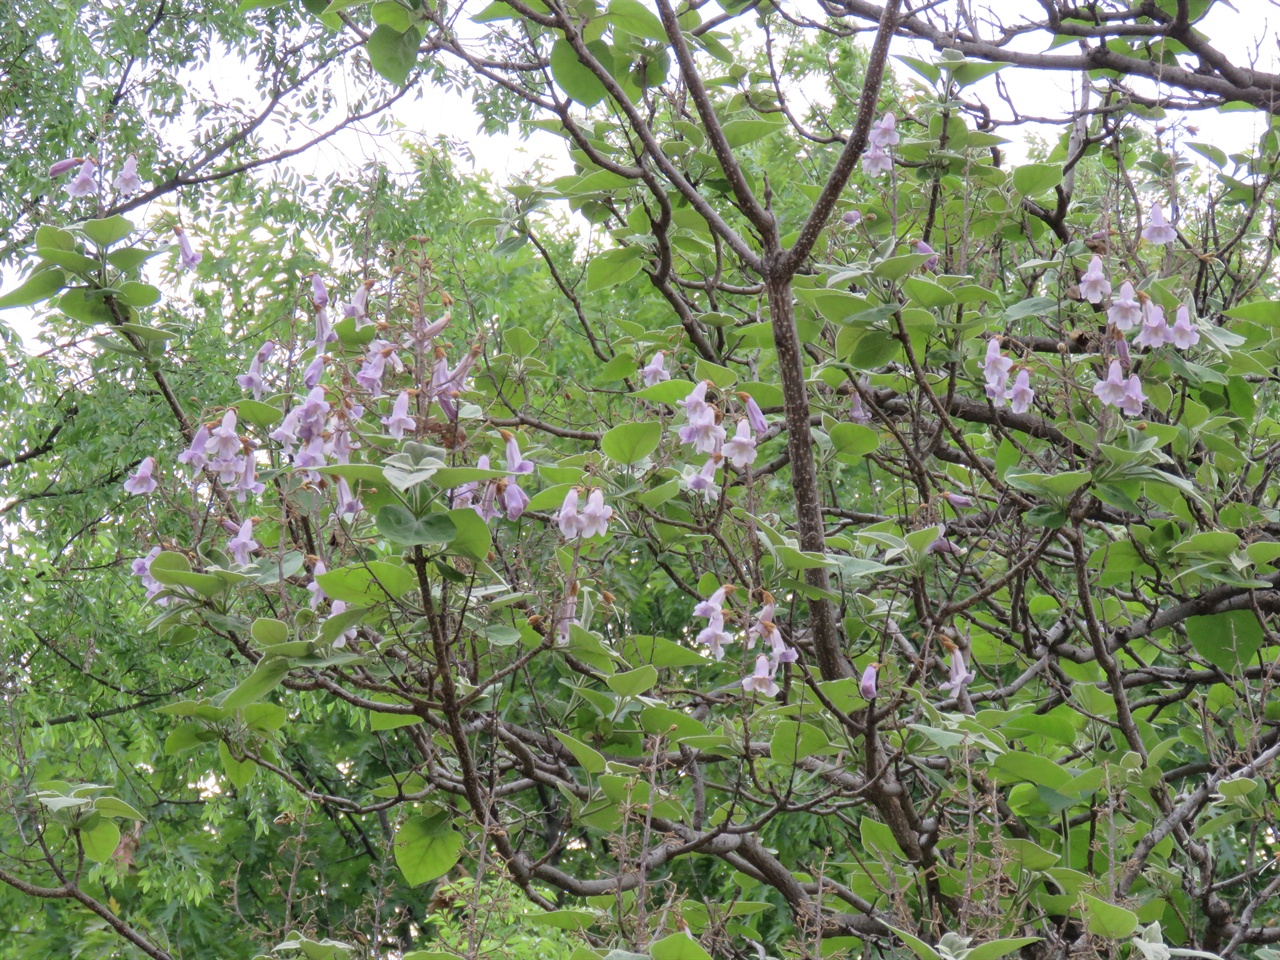 참오동나무에 꿀 많고 향기 짙은 나팔 모양의 통꽃들이 핀 모습.